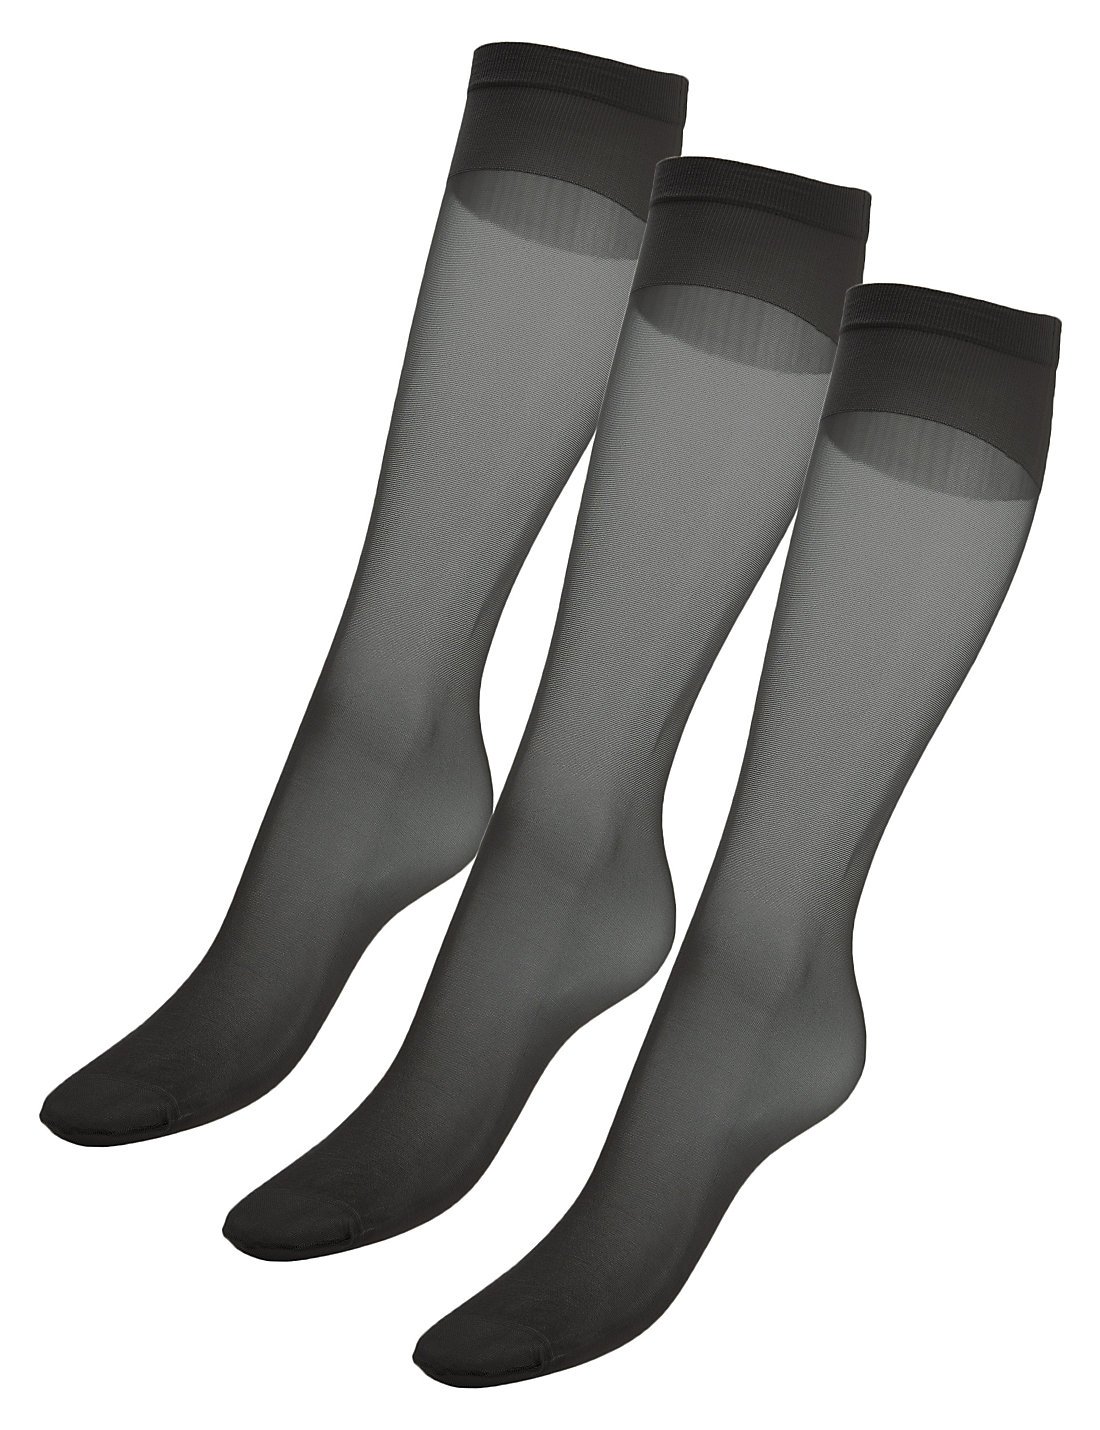 3'lü 15 Denye Medium Support Parlak Diz Altı Çorap (Siver Teknolojisi ile)